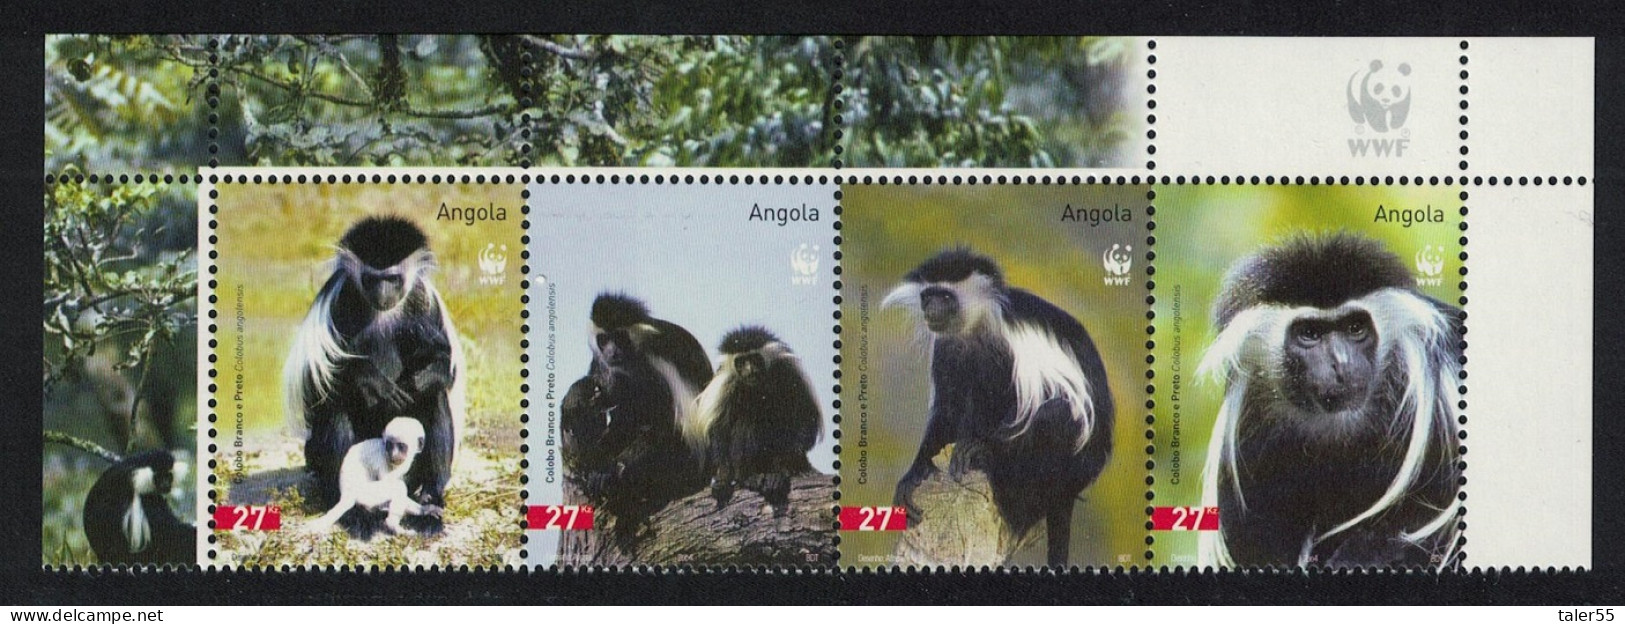 Angola WWF Colobus Monkey Top Strip WWF Logo 2004 MNH SG#1717-1720 MI#1745-1748 Sc#1279 A-d - Angola